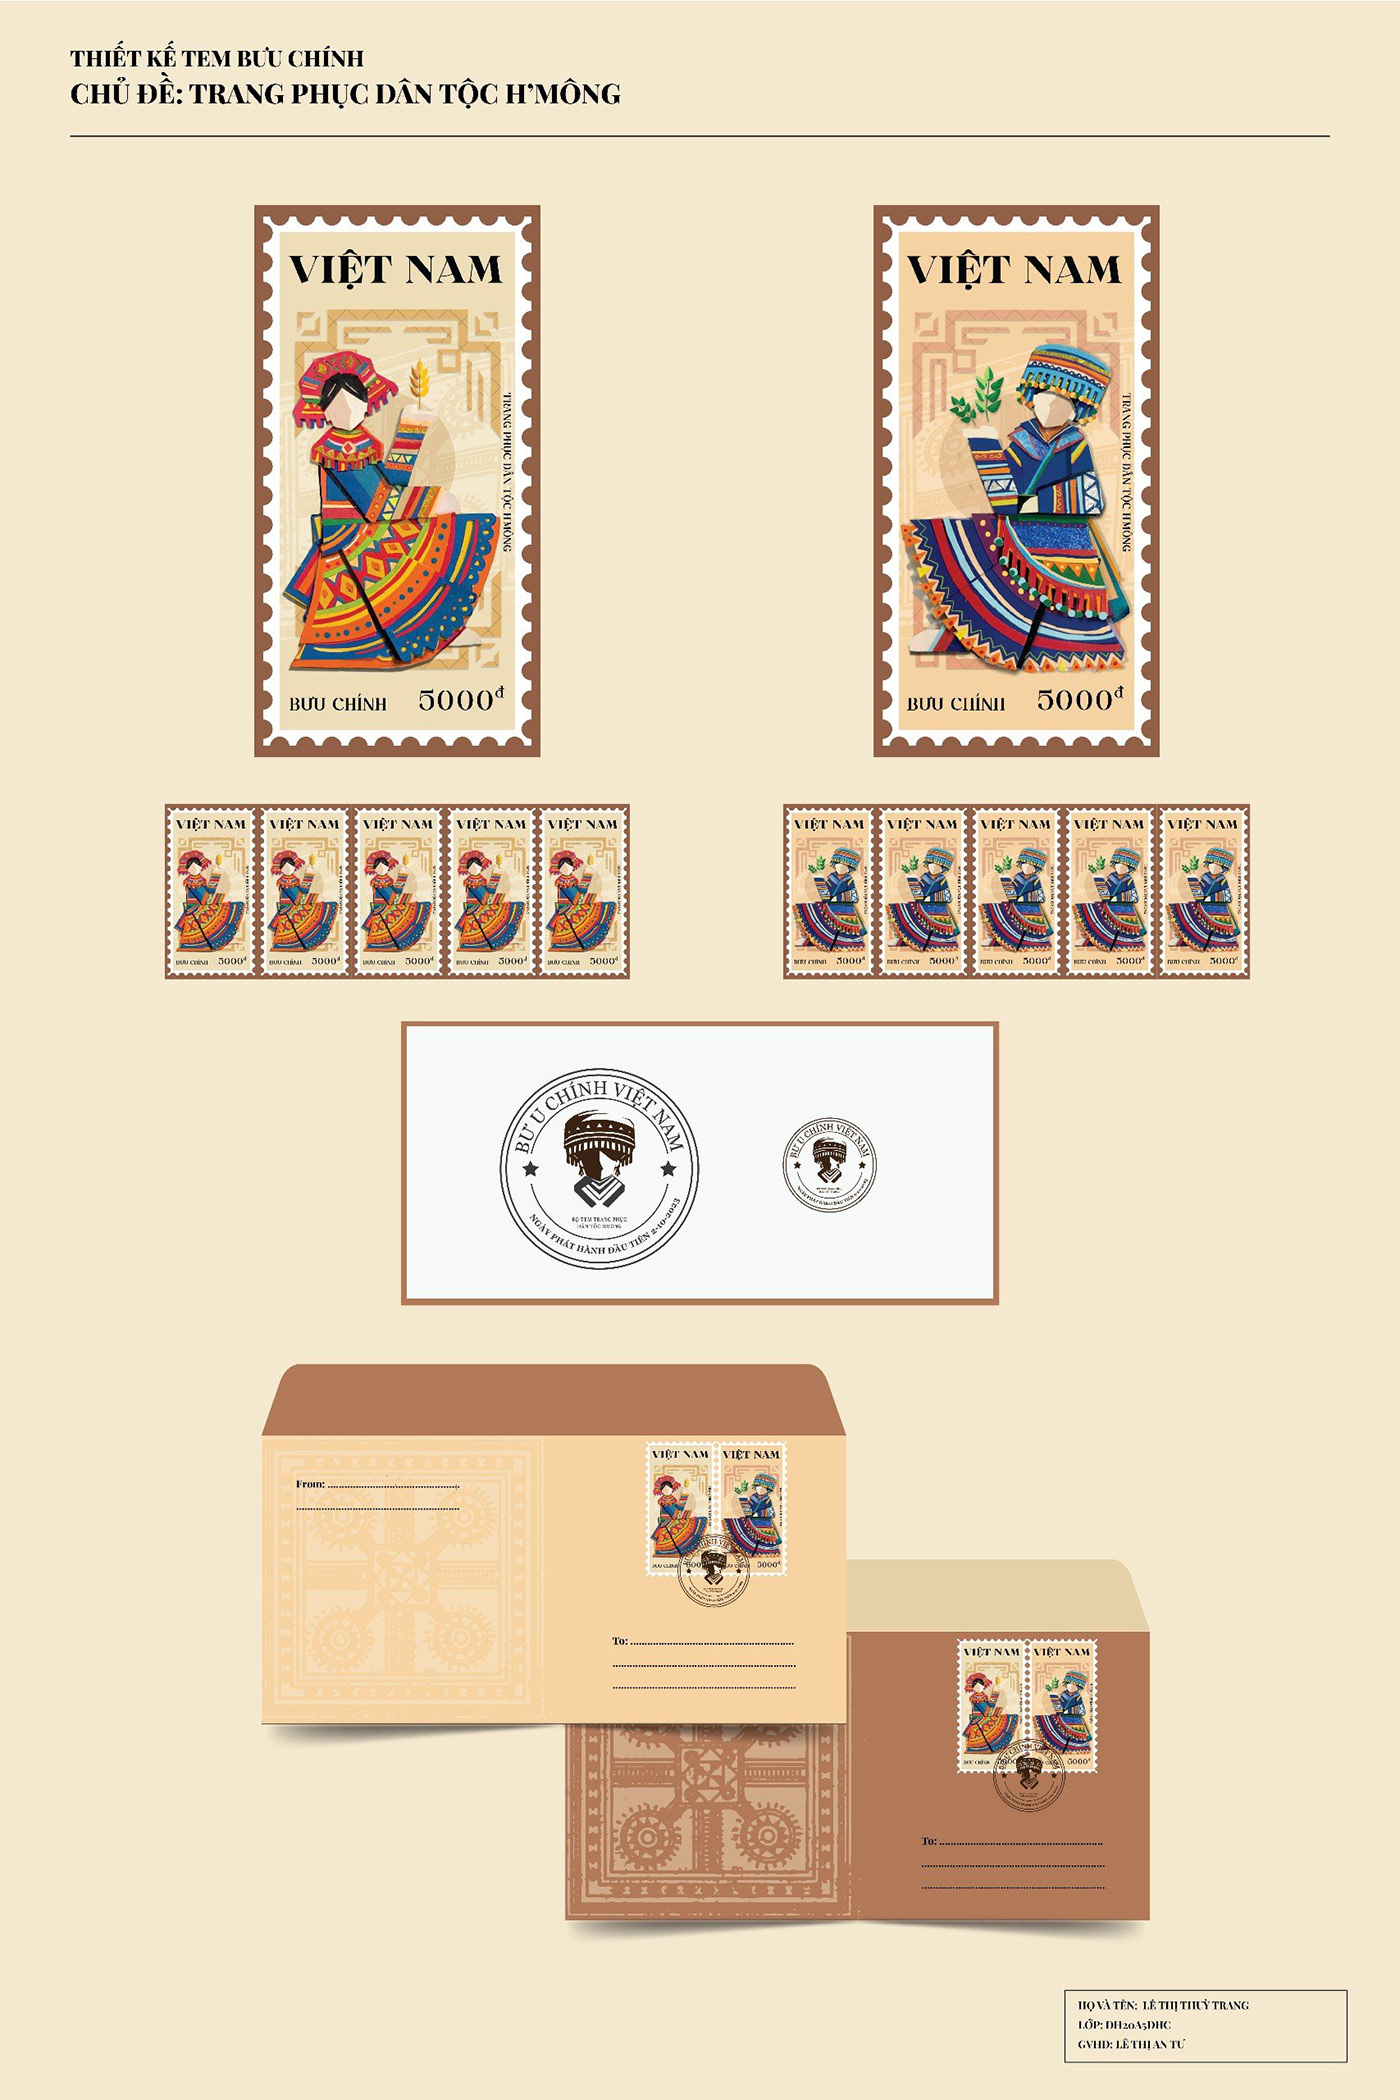 Stamp Design design Graphic Designer adobe illustrator stamps Digital Art 